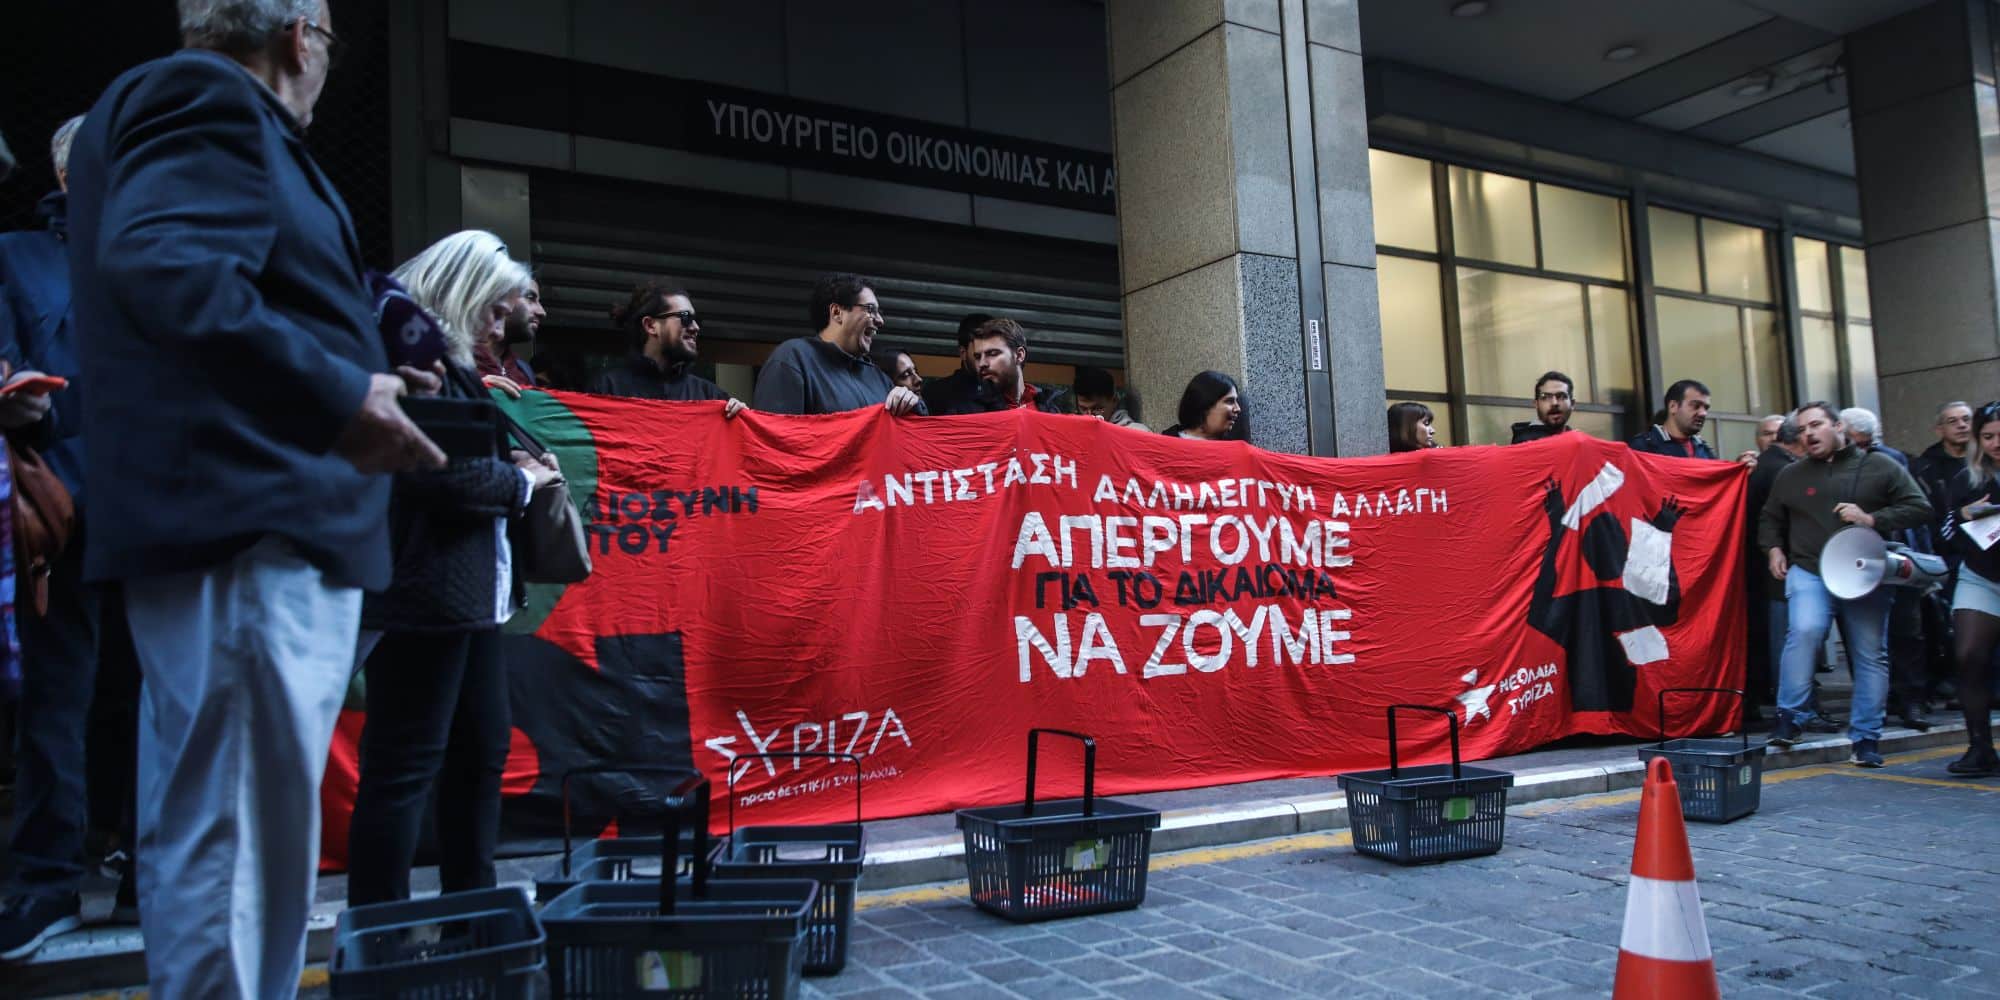 Εικόνα από τη διαμαρτυρία από τα μέλη του ΣΥΡΙΖΑ